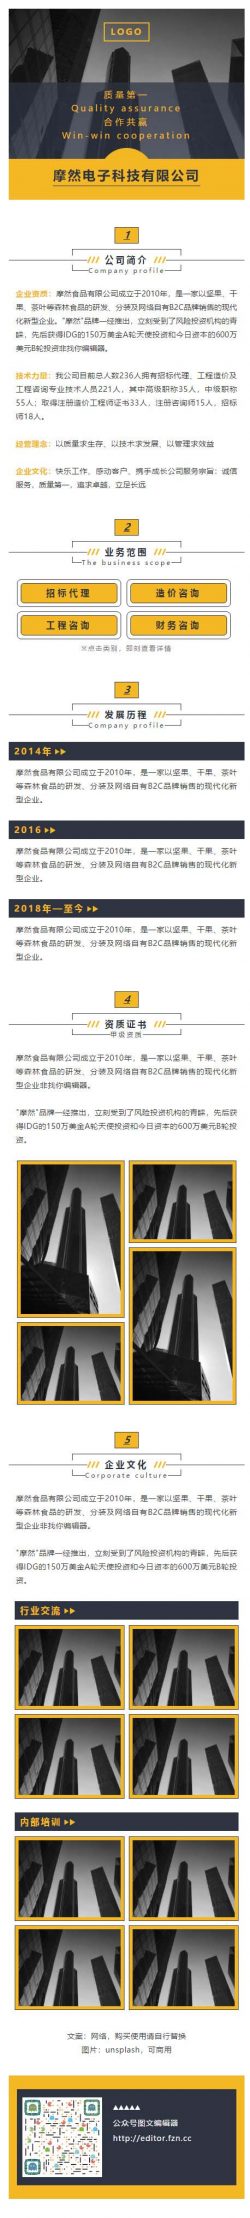 公司简介企业品牌介绍黄色黑色大气公众号推文素材推送图文